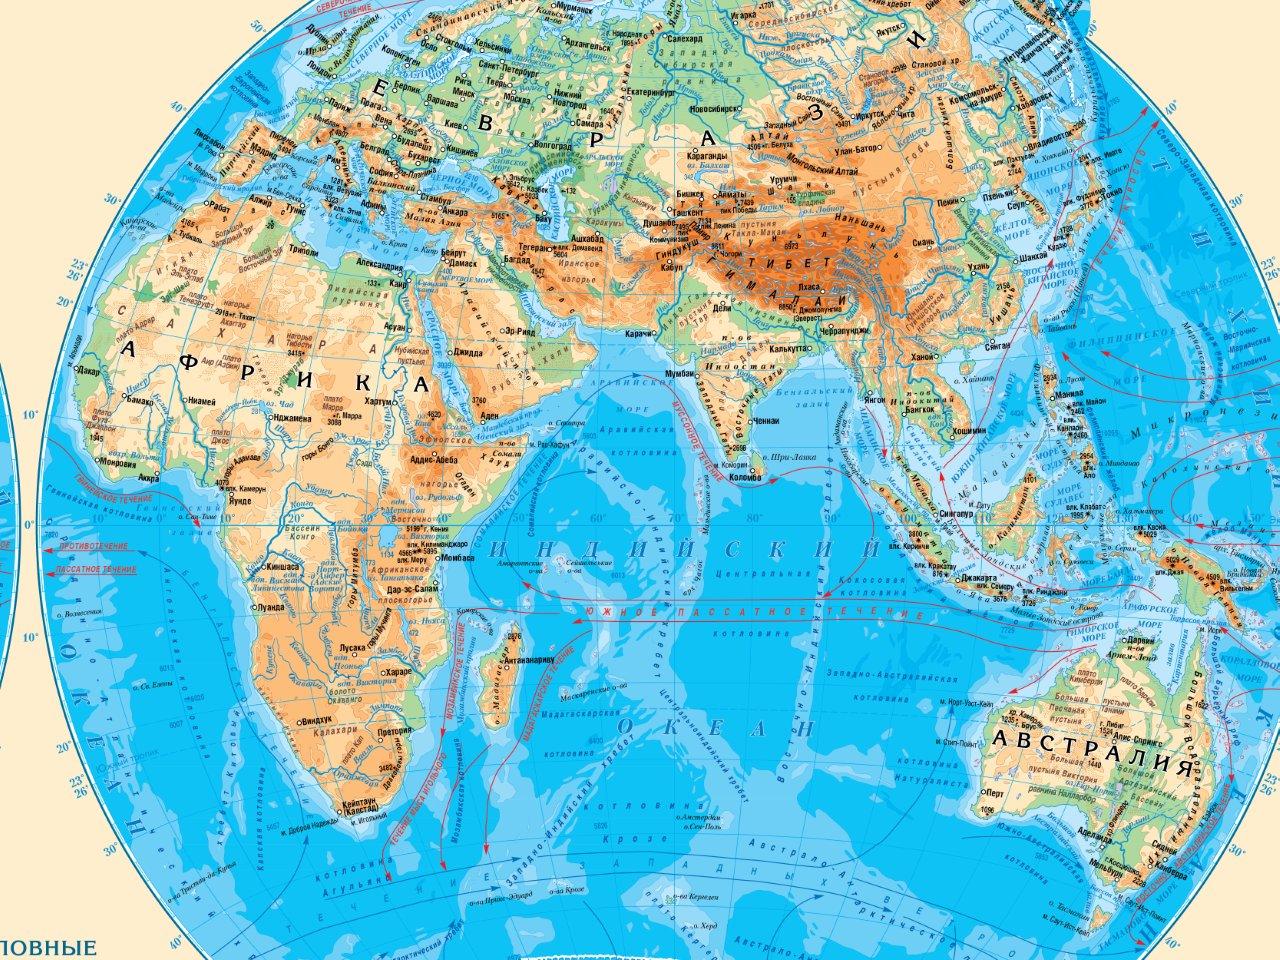 1 географическая карта